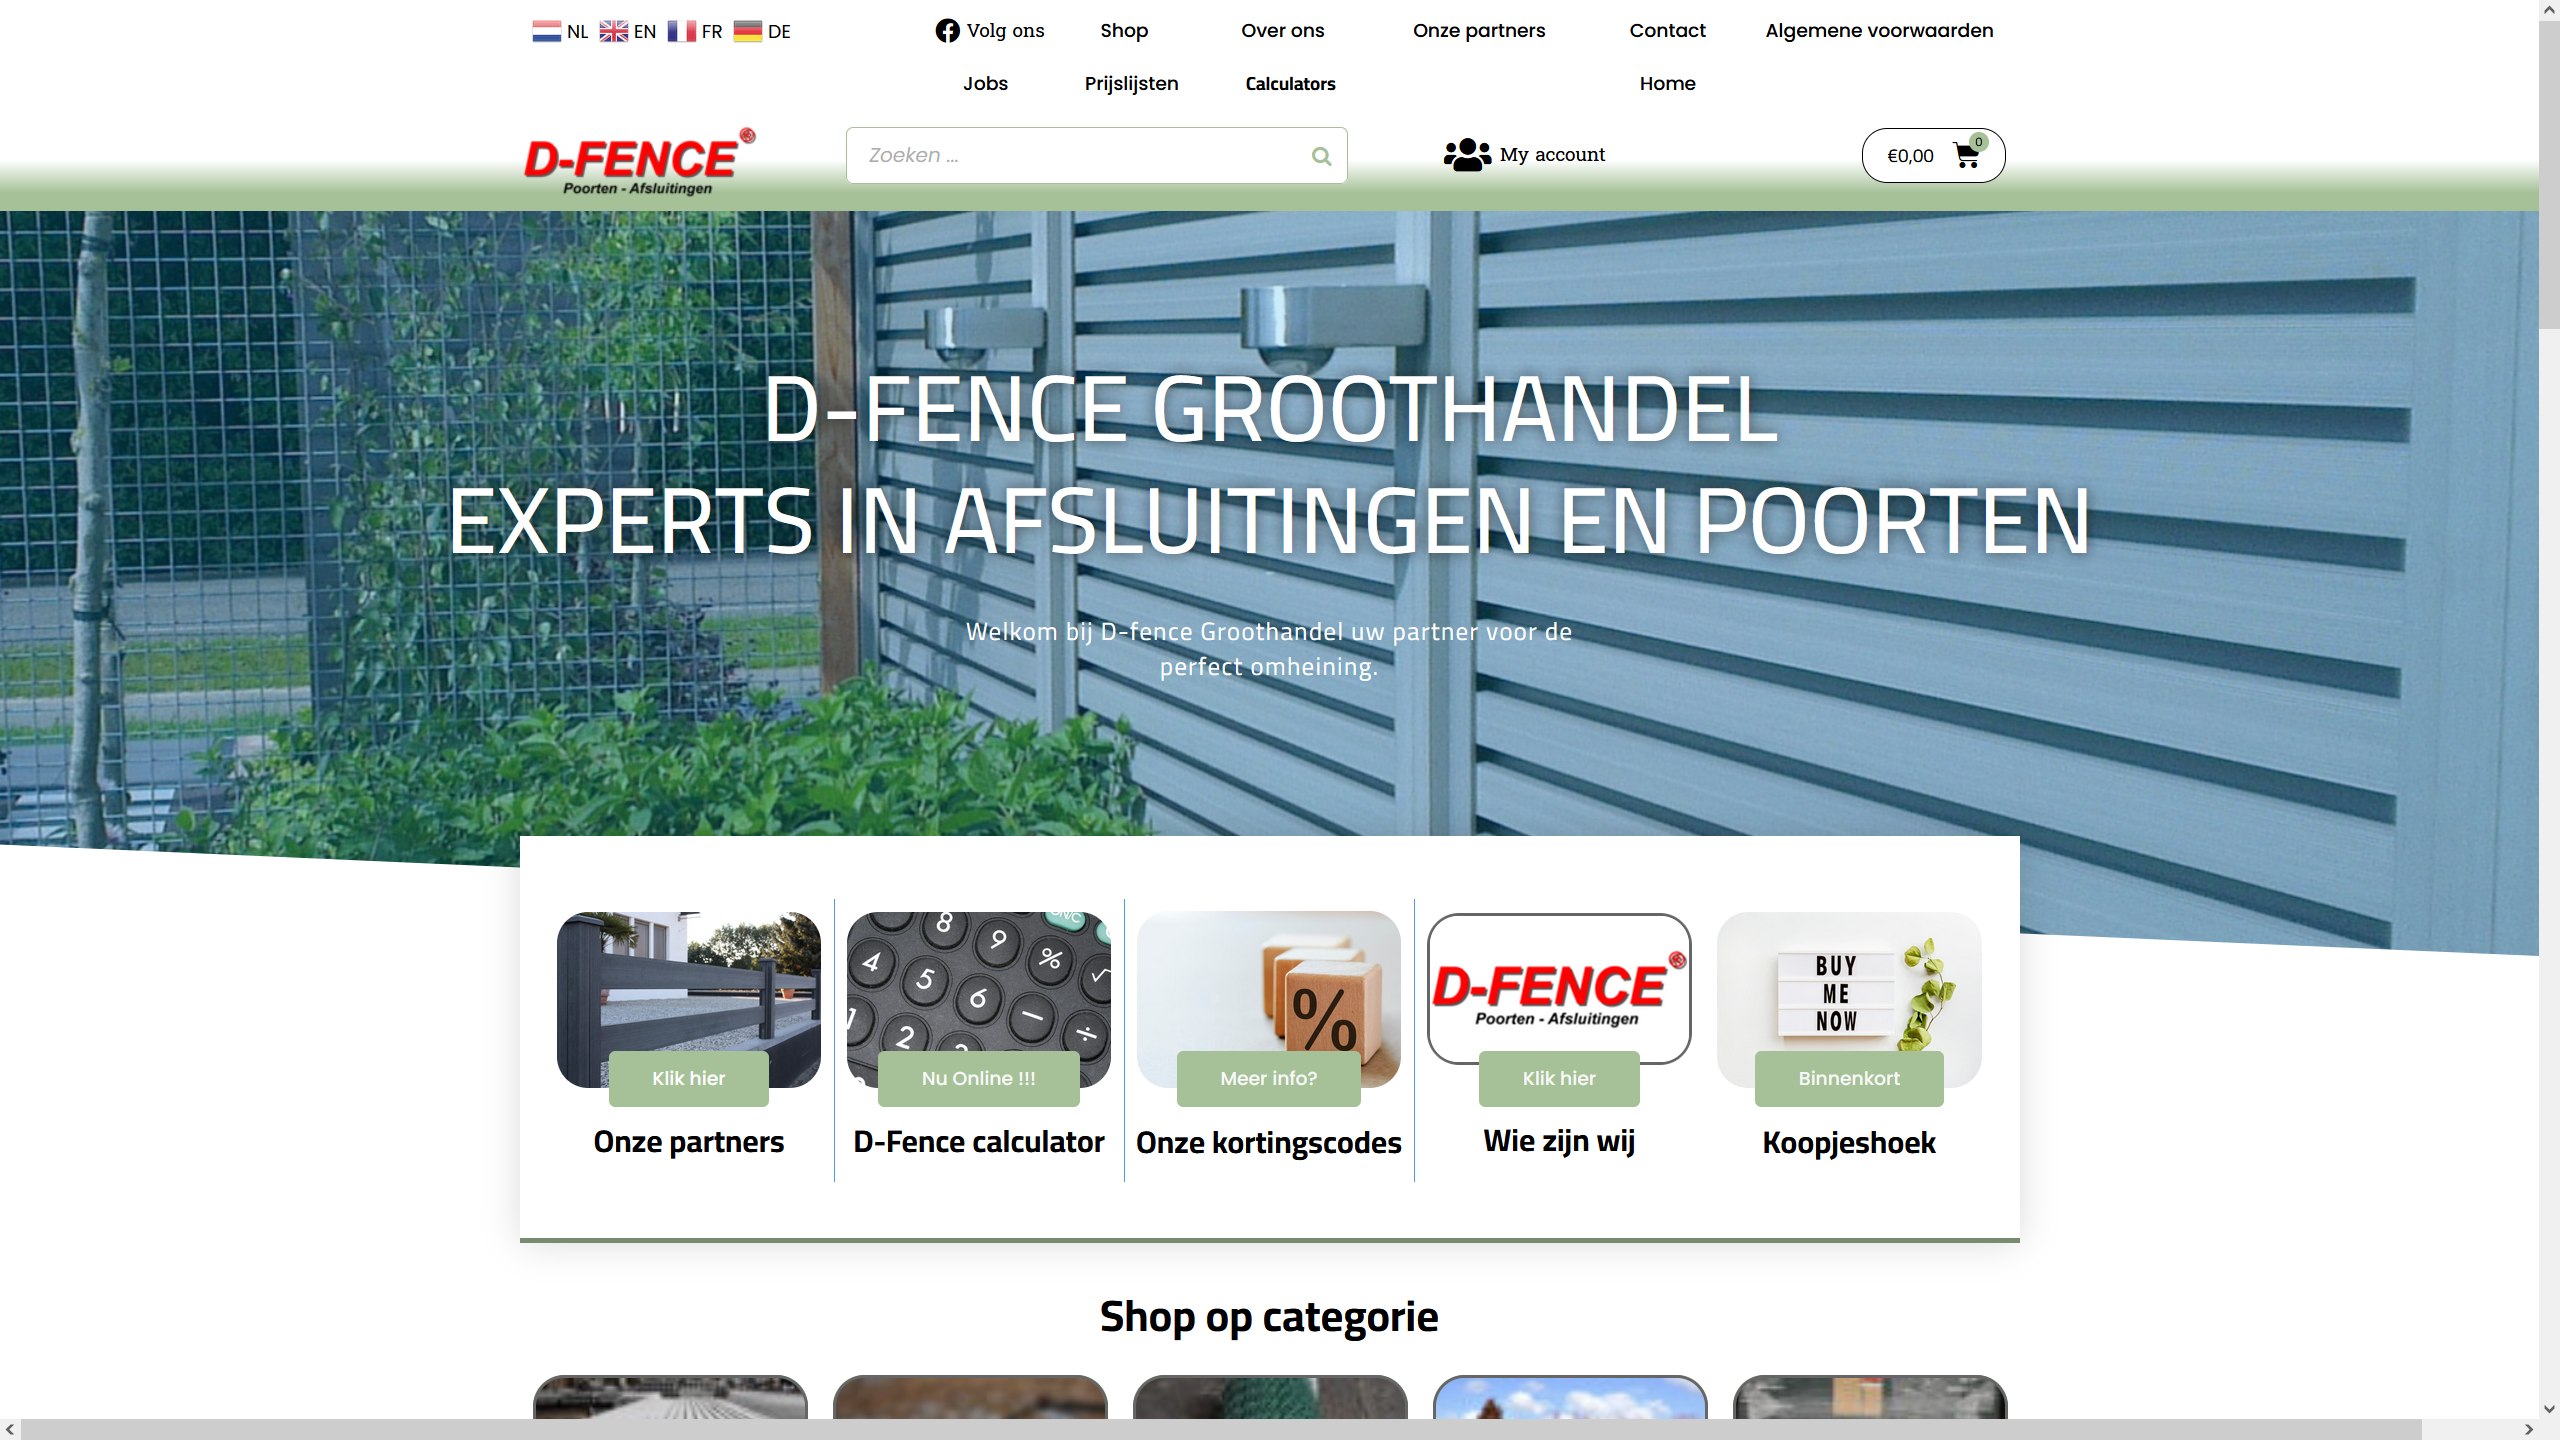 dfence website screenshot